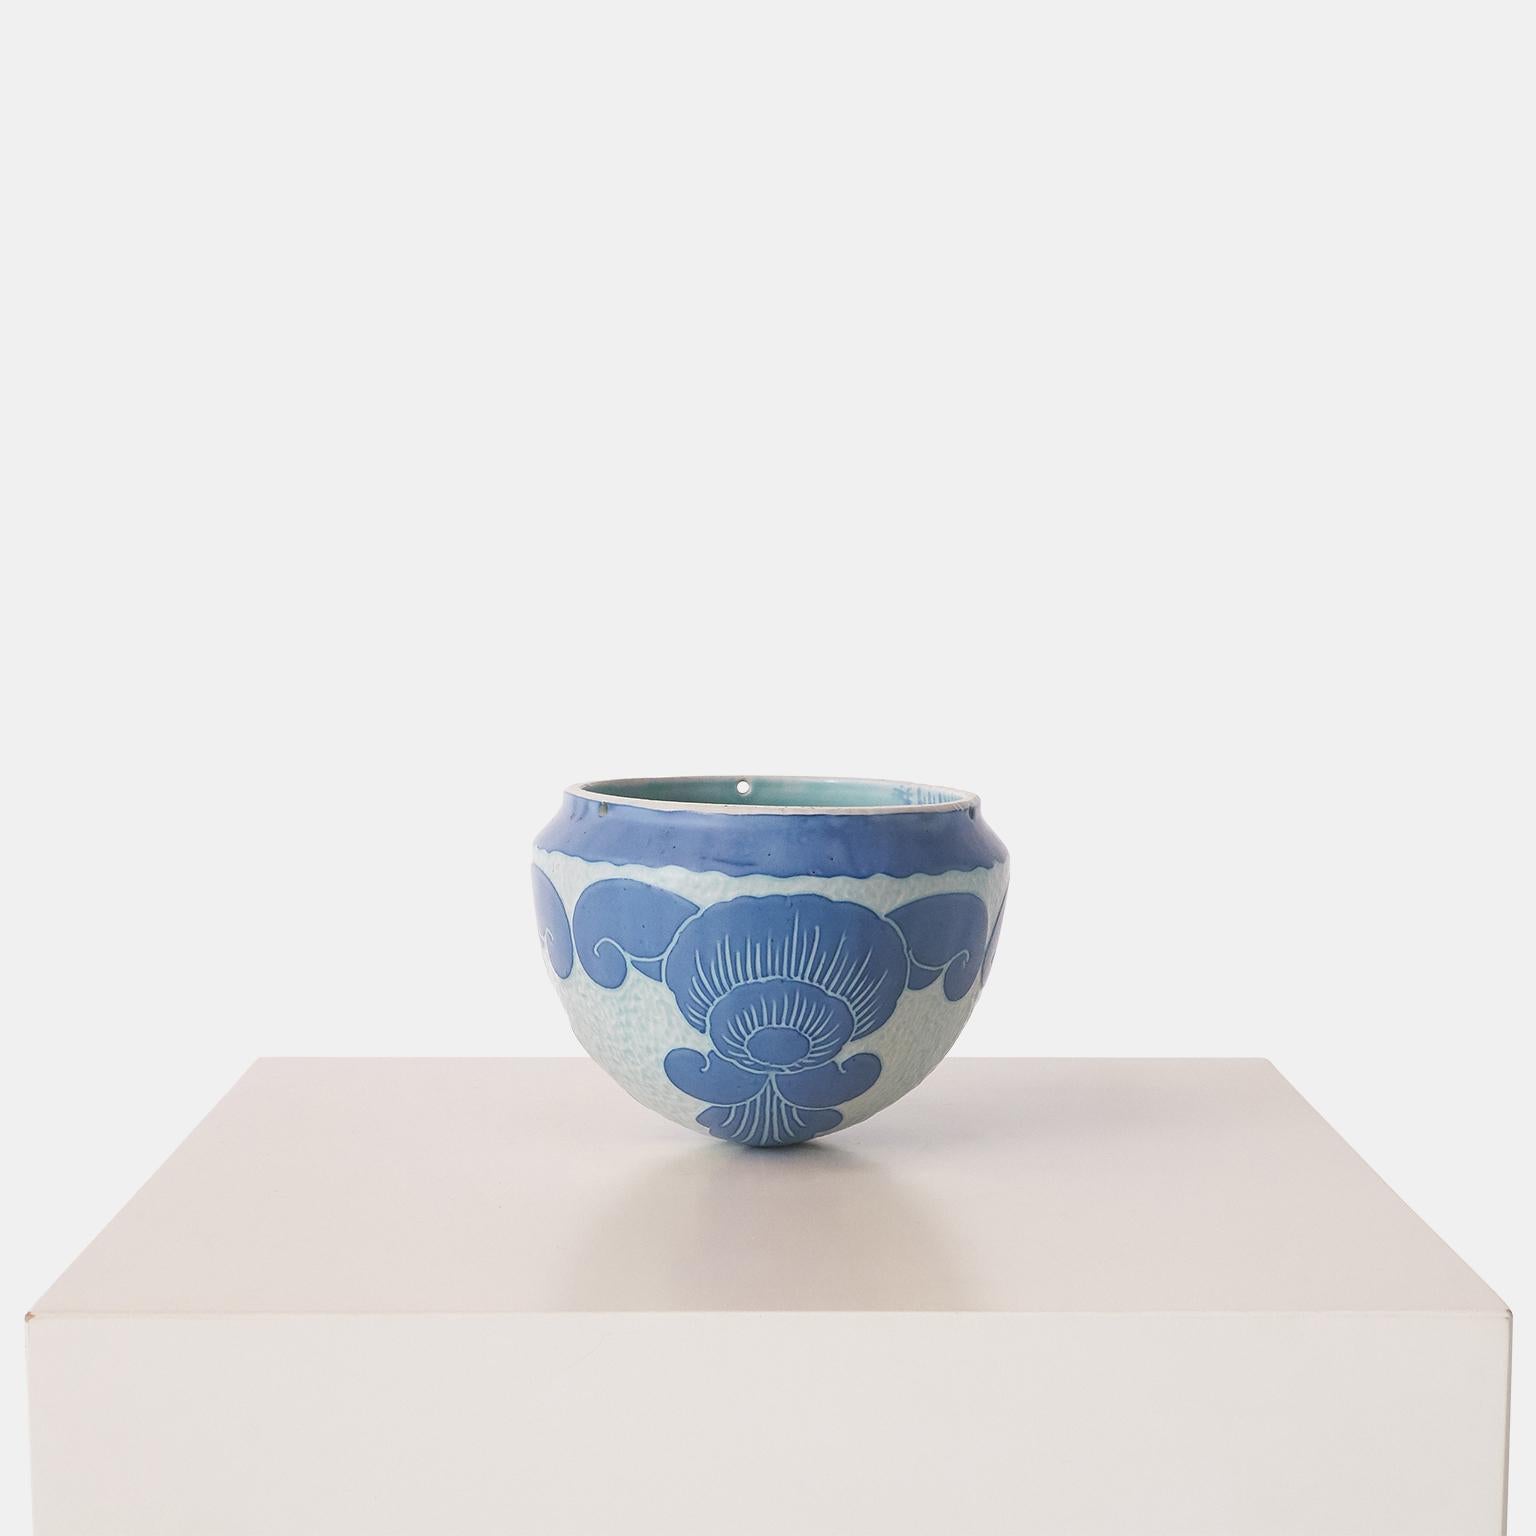 Eine handgefertigte blaue Vase von Josef Ekberg für Gustavsberg. Jedes Stück ist ein Unikat und mit der von Ekberg selbst entwickelten Sgrafitto-Technik verziert. Dieses Stück hat 3 kleine Löcher im oberen Rand und ist als Gefäß für Hängepflanzen